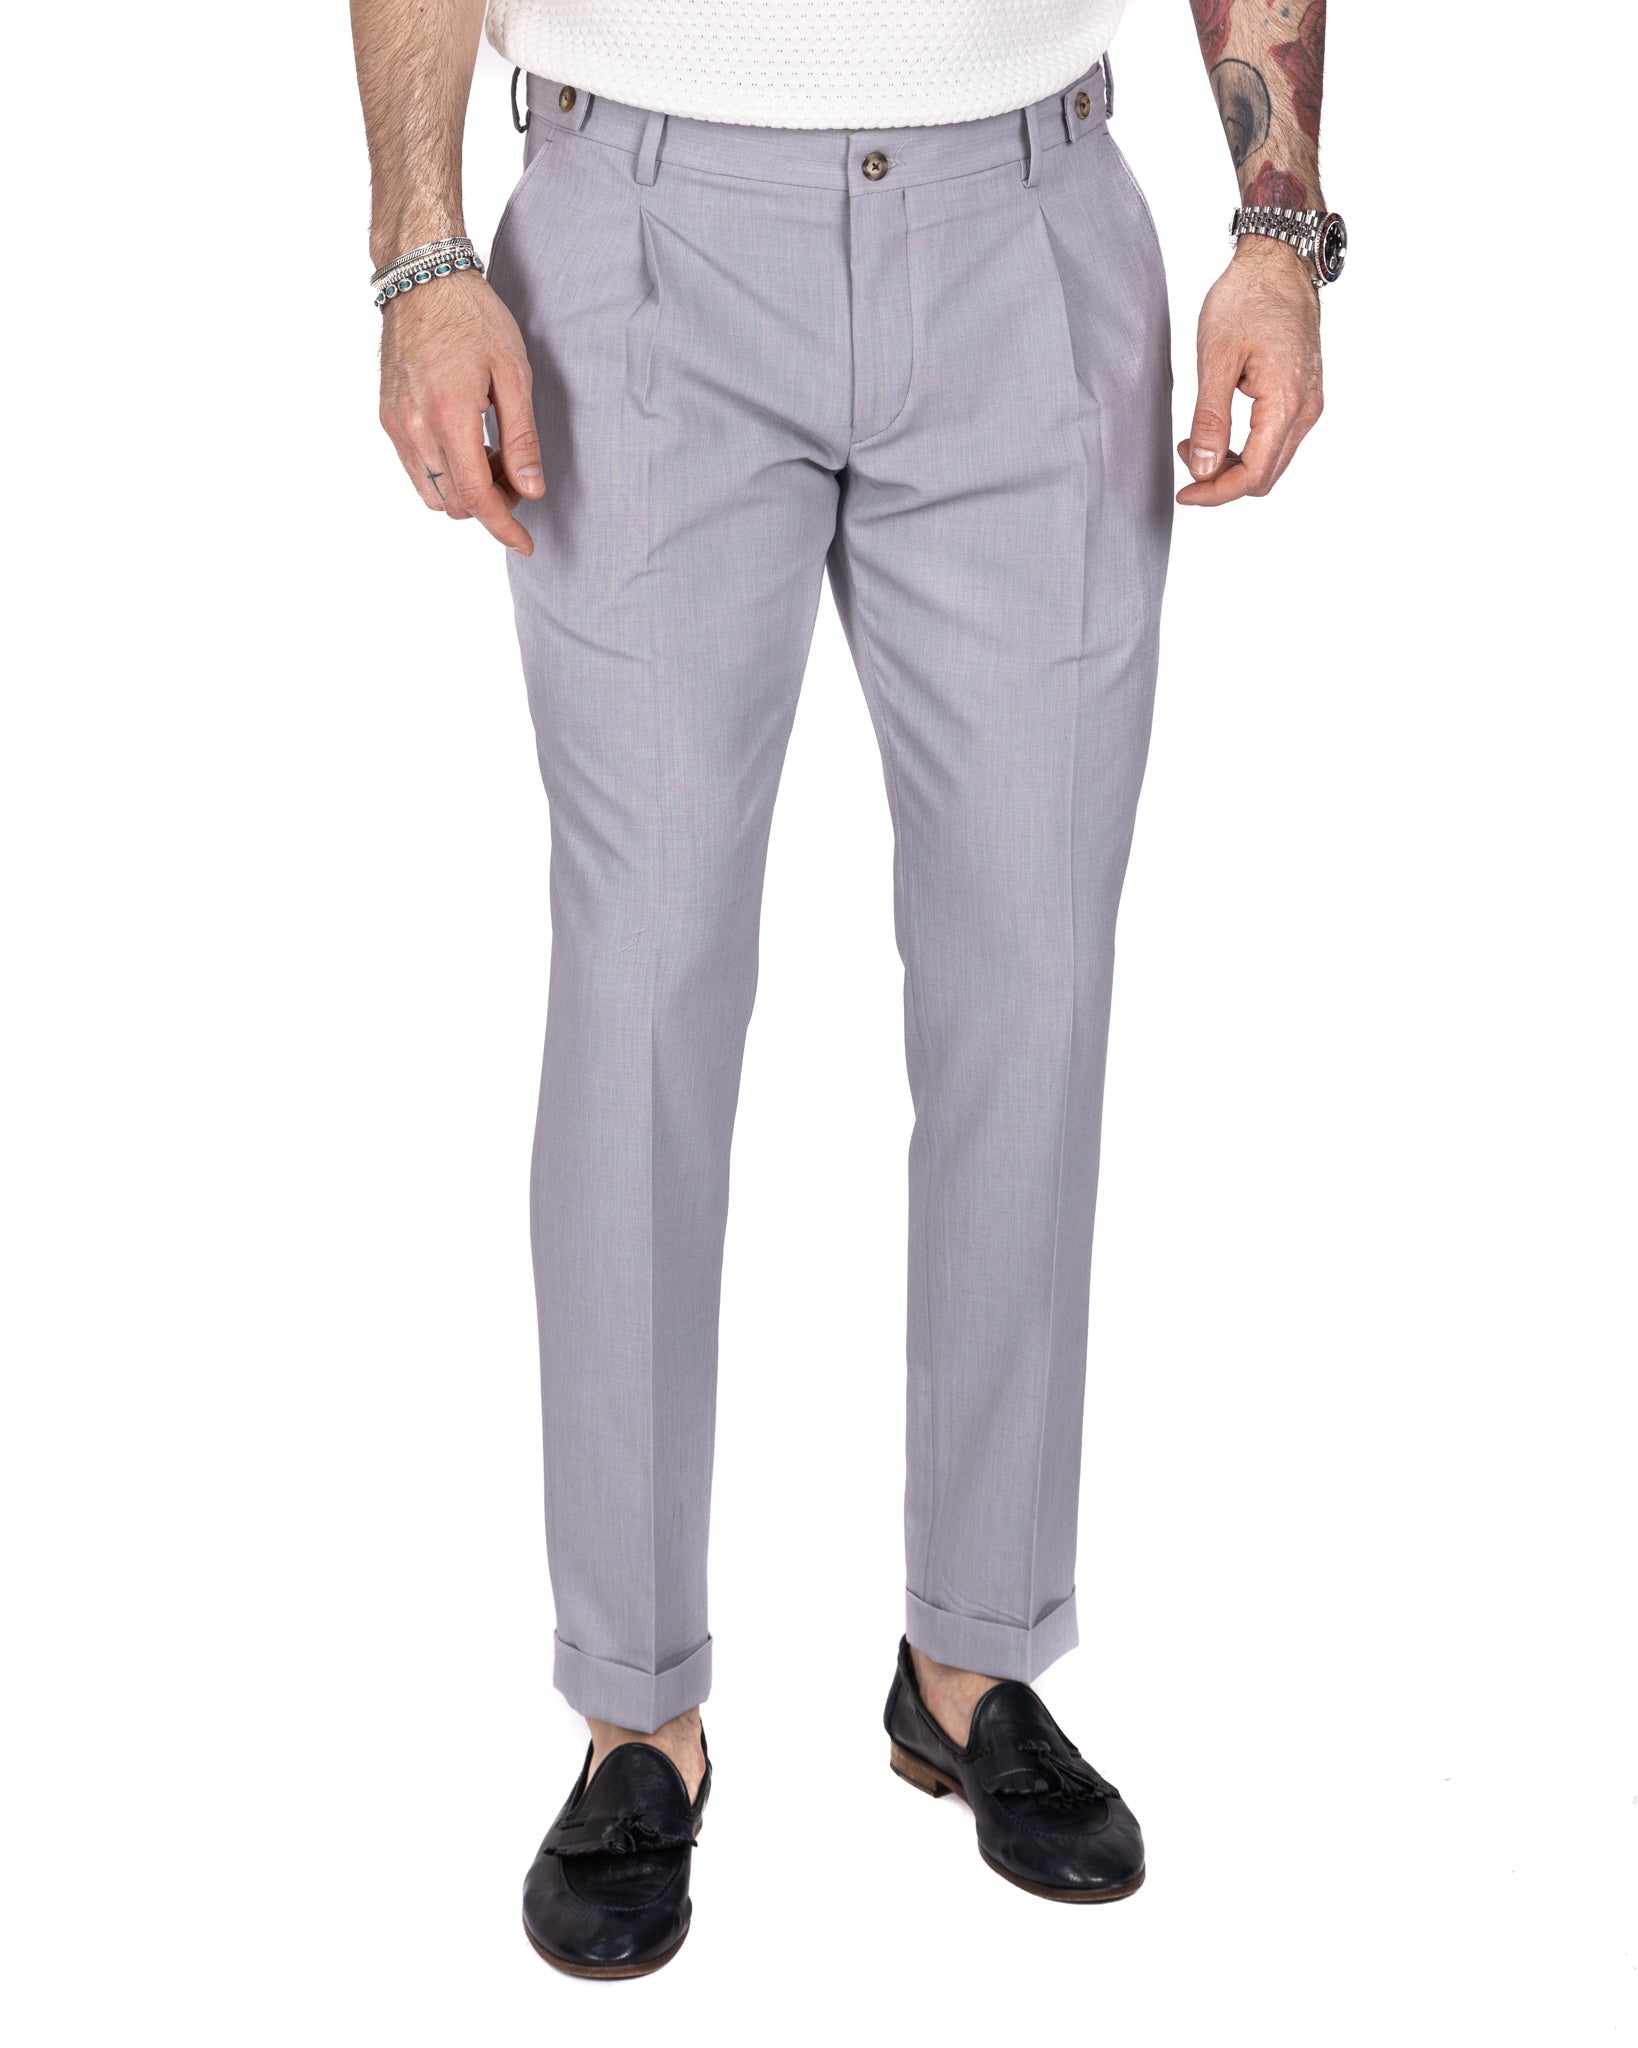 Milano - pantalon basique gris clair